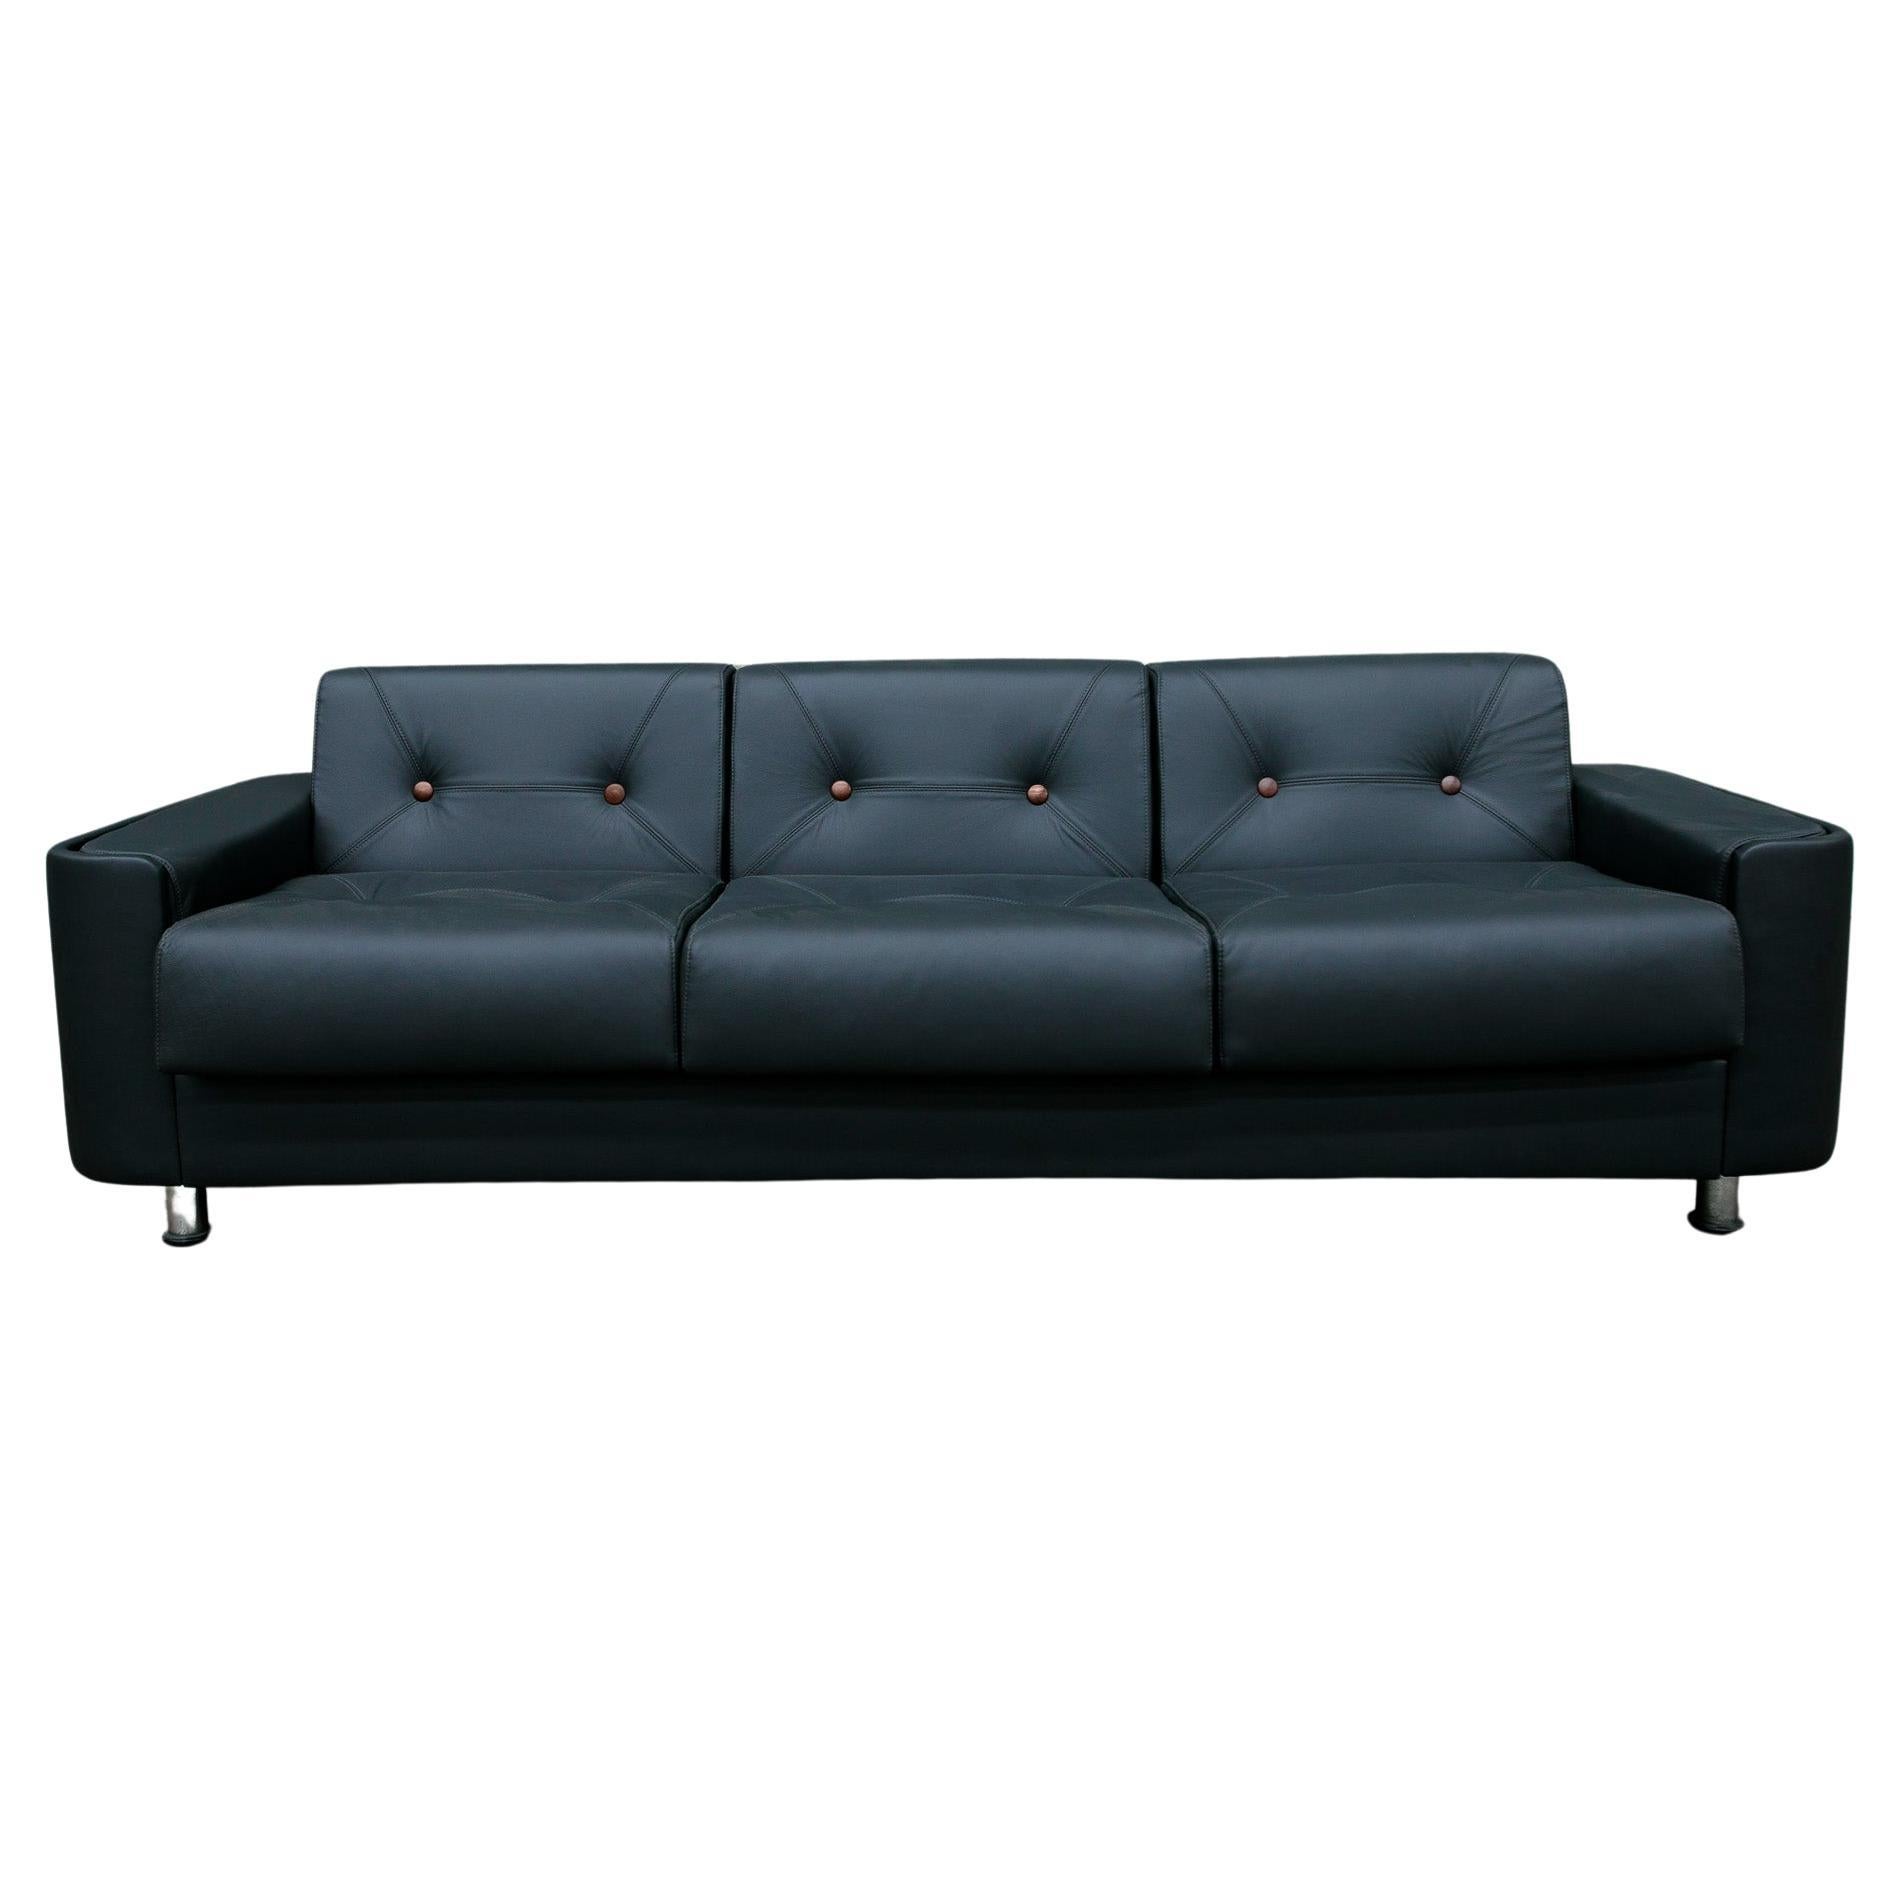 Disponible dès maintenant, ce canapé moderne très brésilien en cuir noir, bois et chrome conçu par Jorge Zalszupin dans les années 70 est tout simplement spectaculaire !

Ce canapé trois places unique en son genre est appelé 